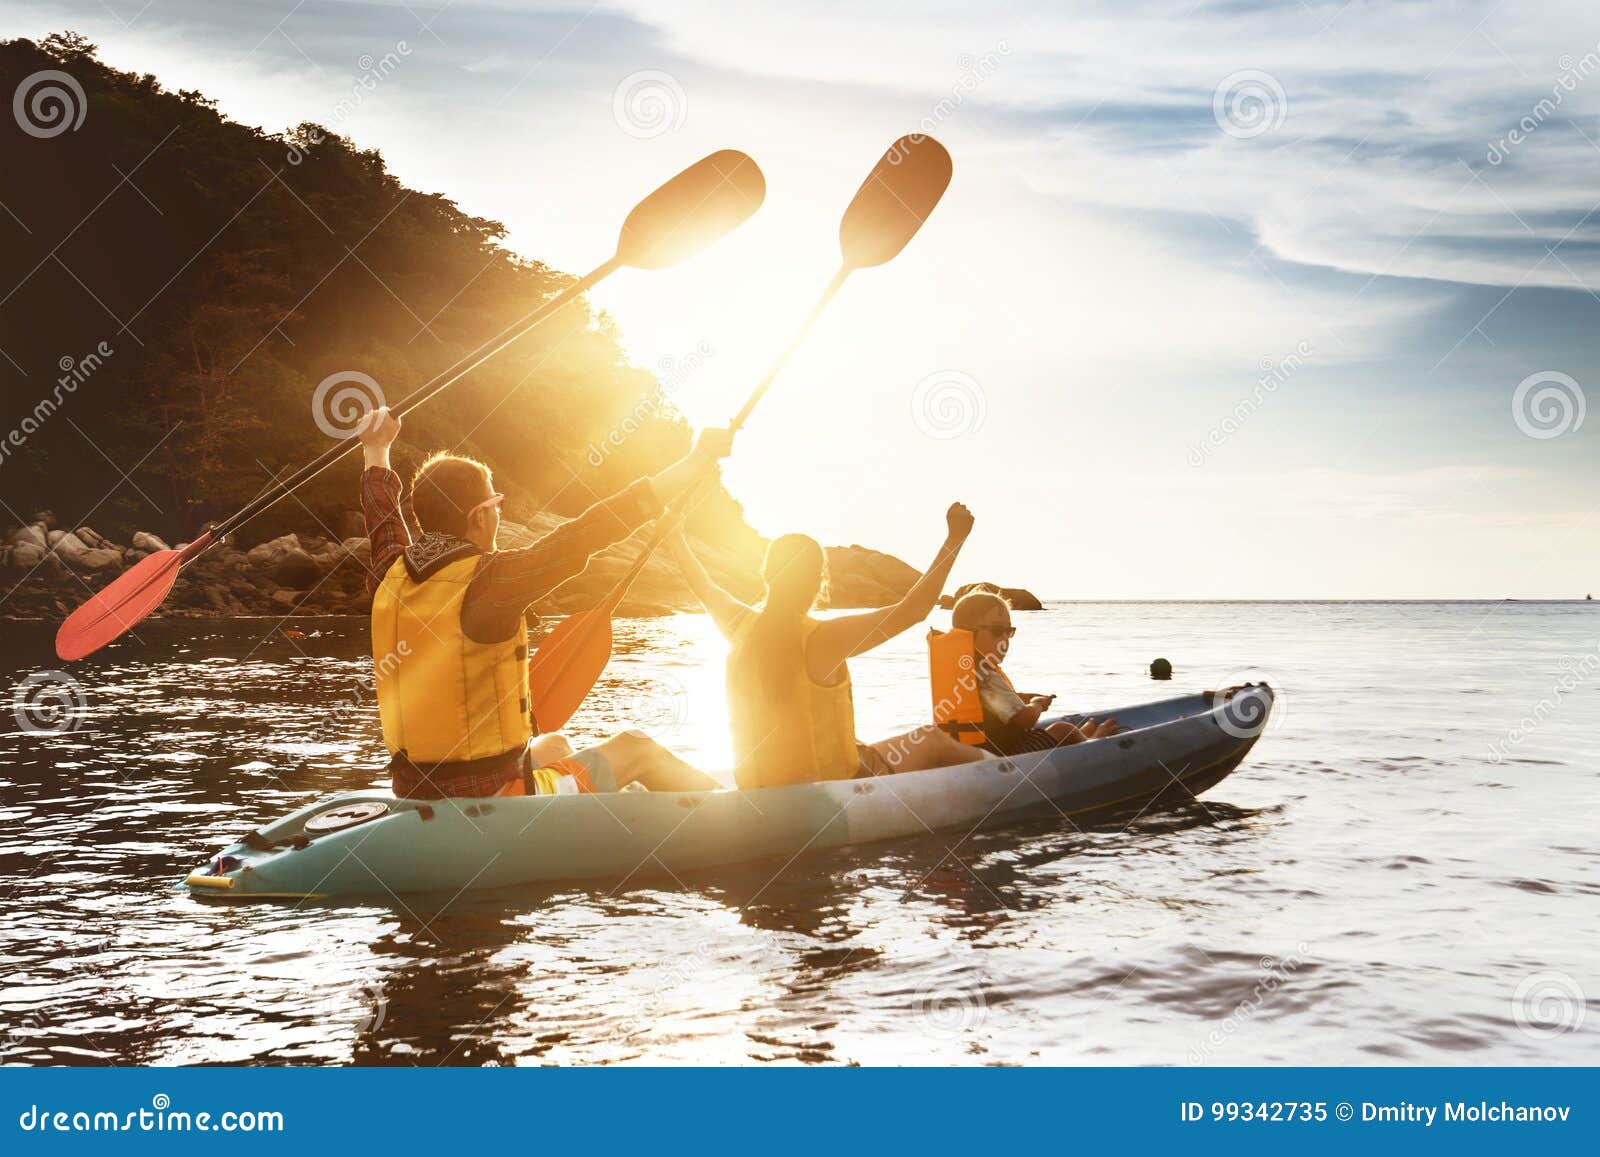 happy family kayaking sunset sea